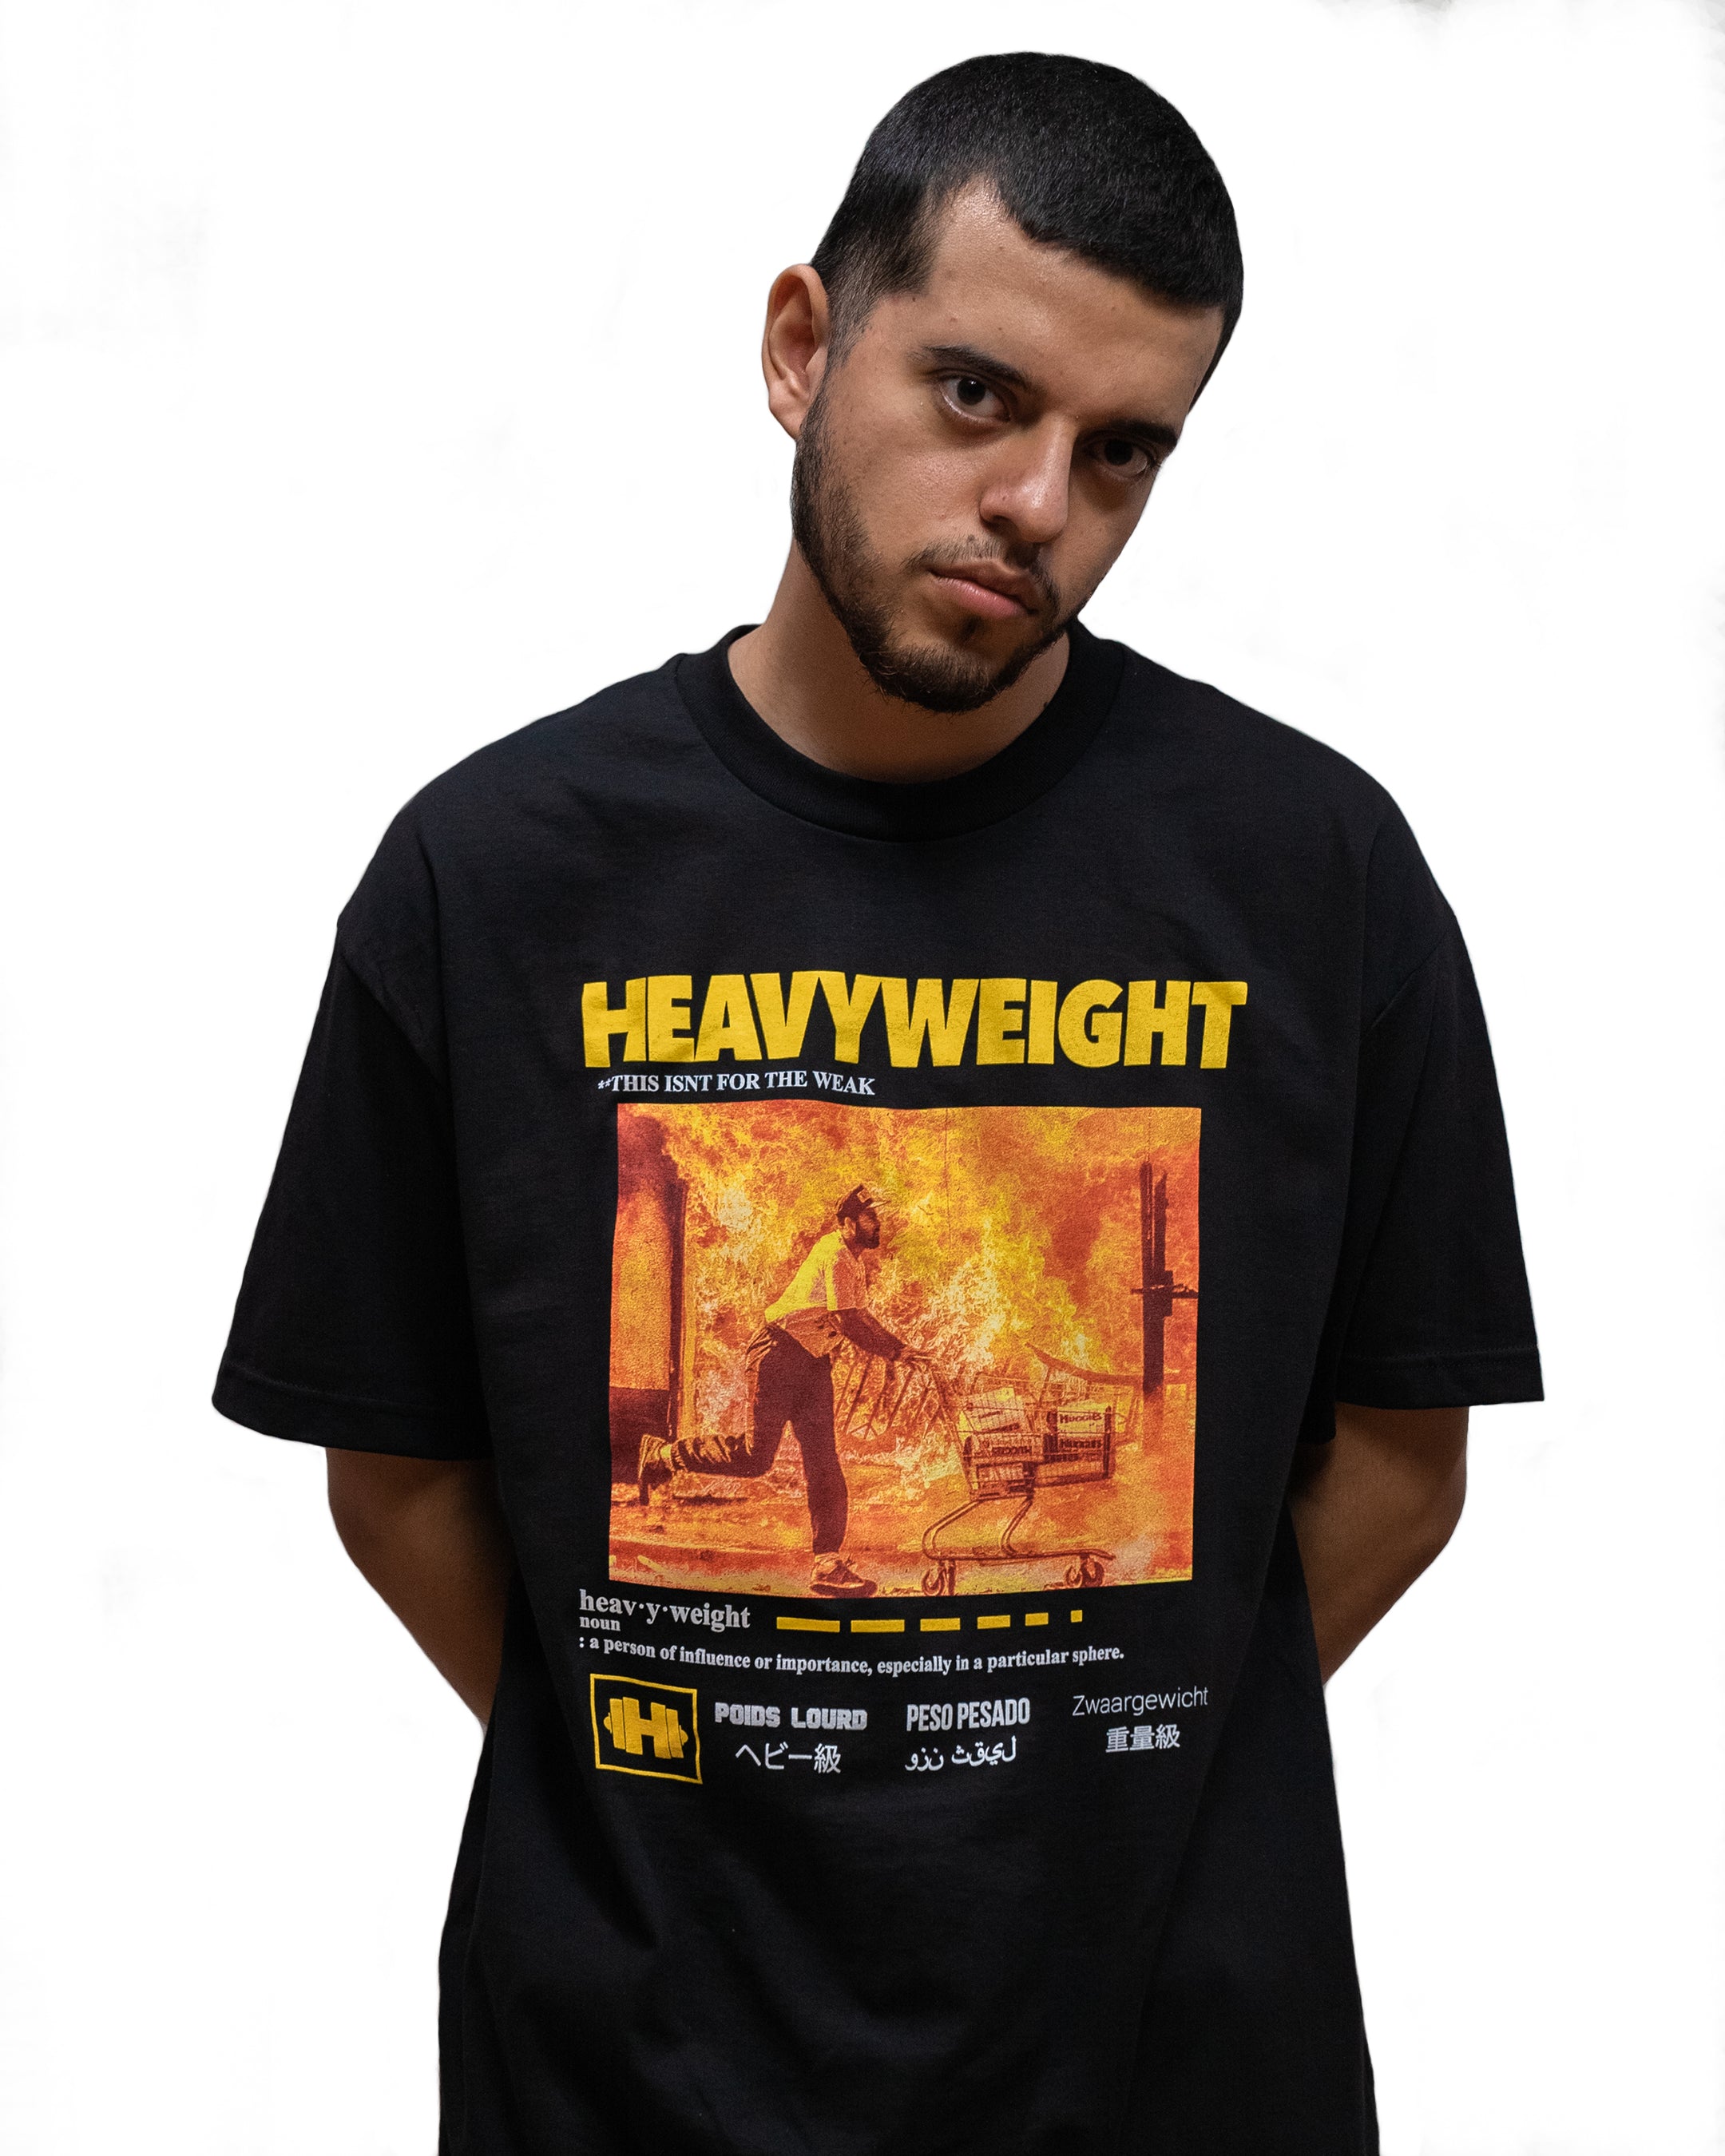 Heavyweight Records - Man on Fire Shirt